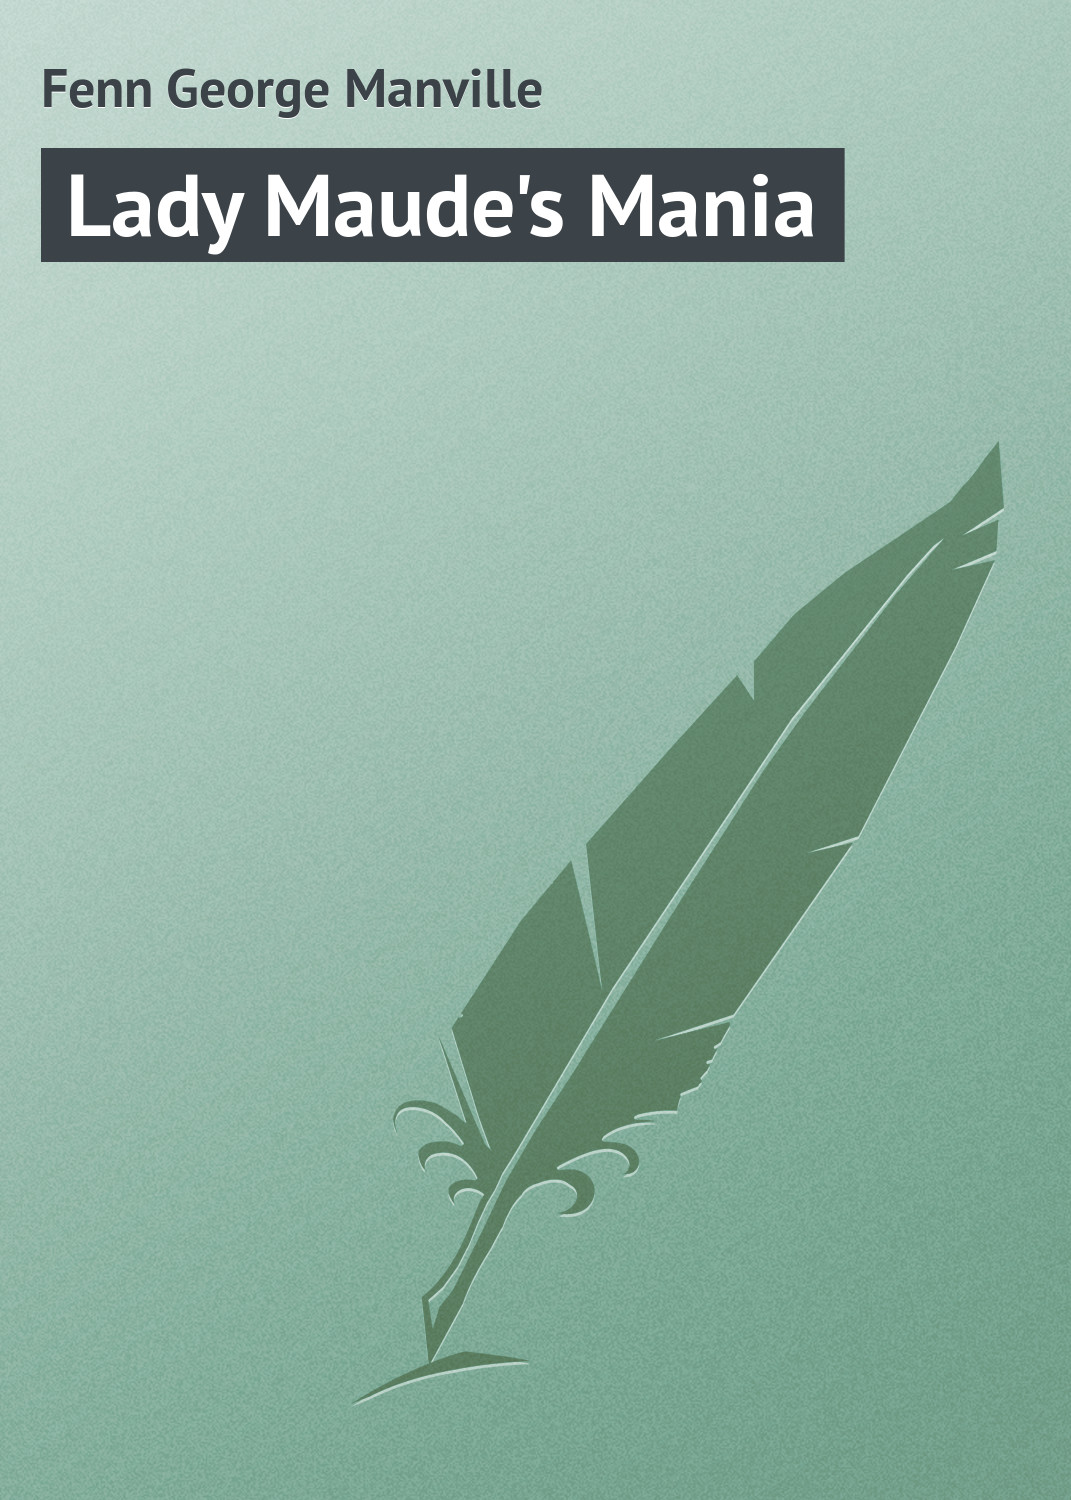 Книга Lady Maude's Mania из серии , созданная George Fenn, может относится к жанру Зарубежная классика. Стоимость электронной книги Lady Maude's Mania с идентификатором 23166619 составляет 5.99 руб.